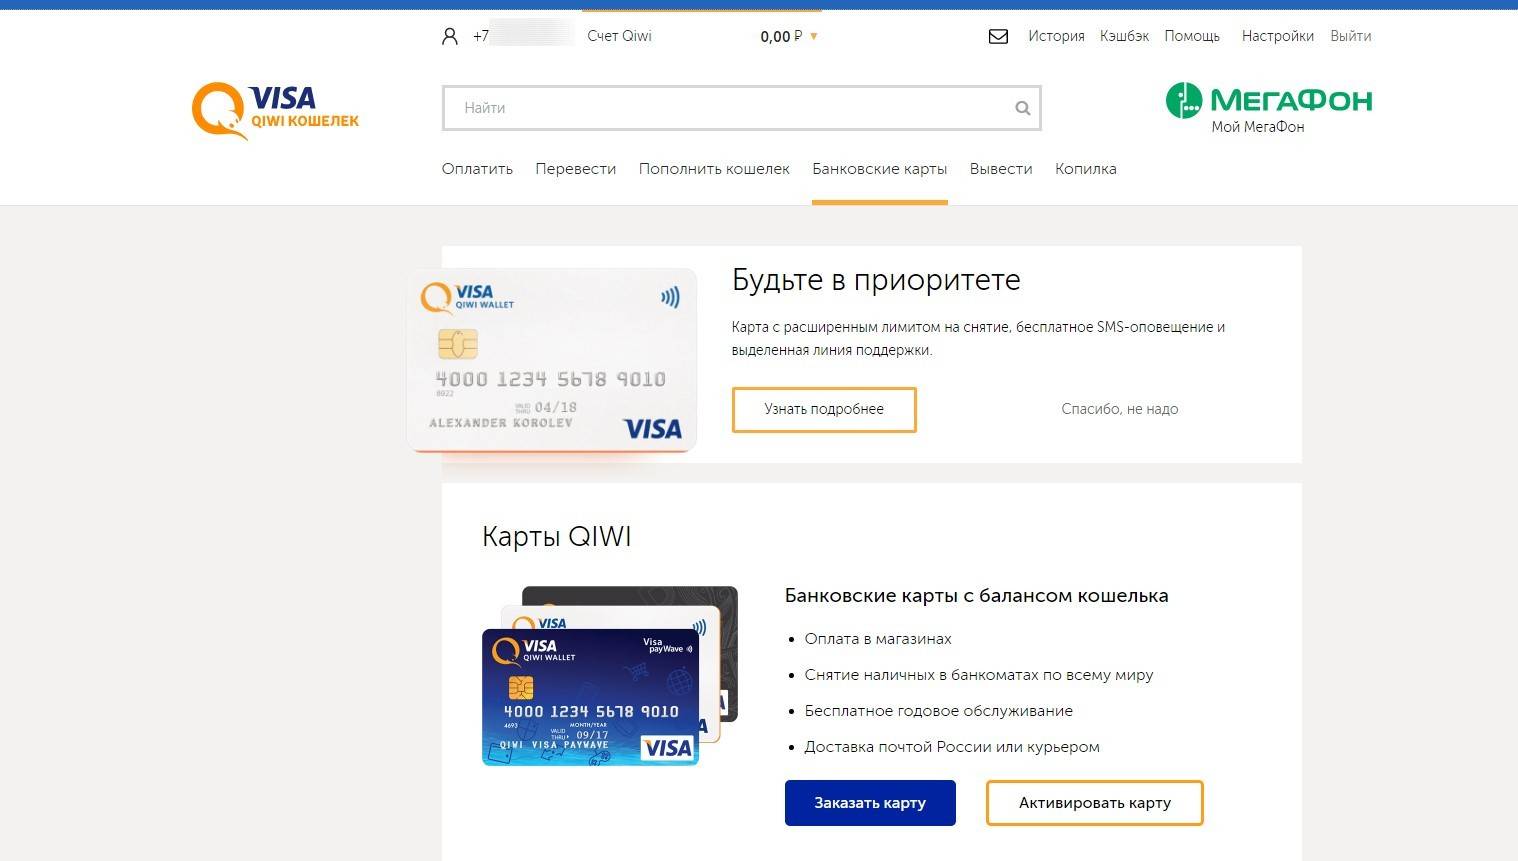 Виртуальная карта киви qiwi visa card: как получить и пользоваться